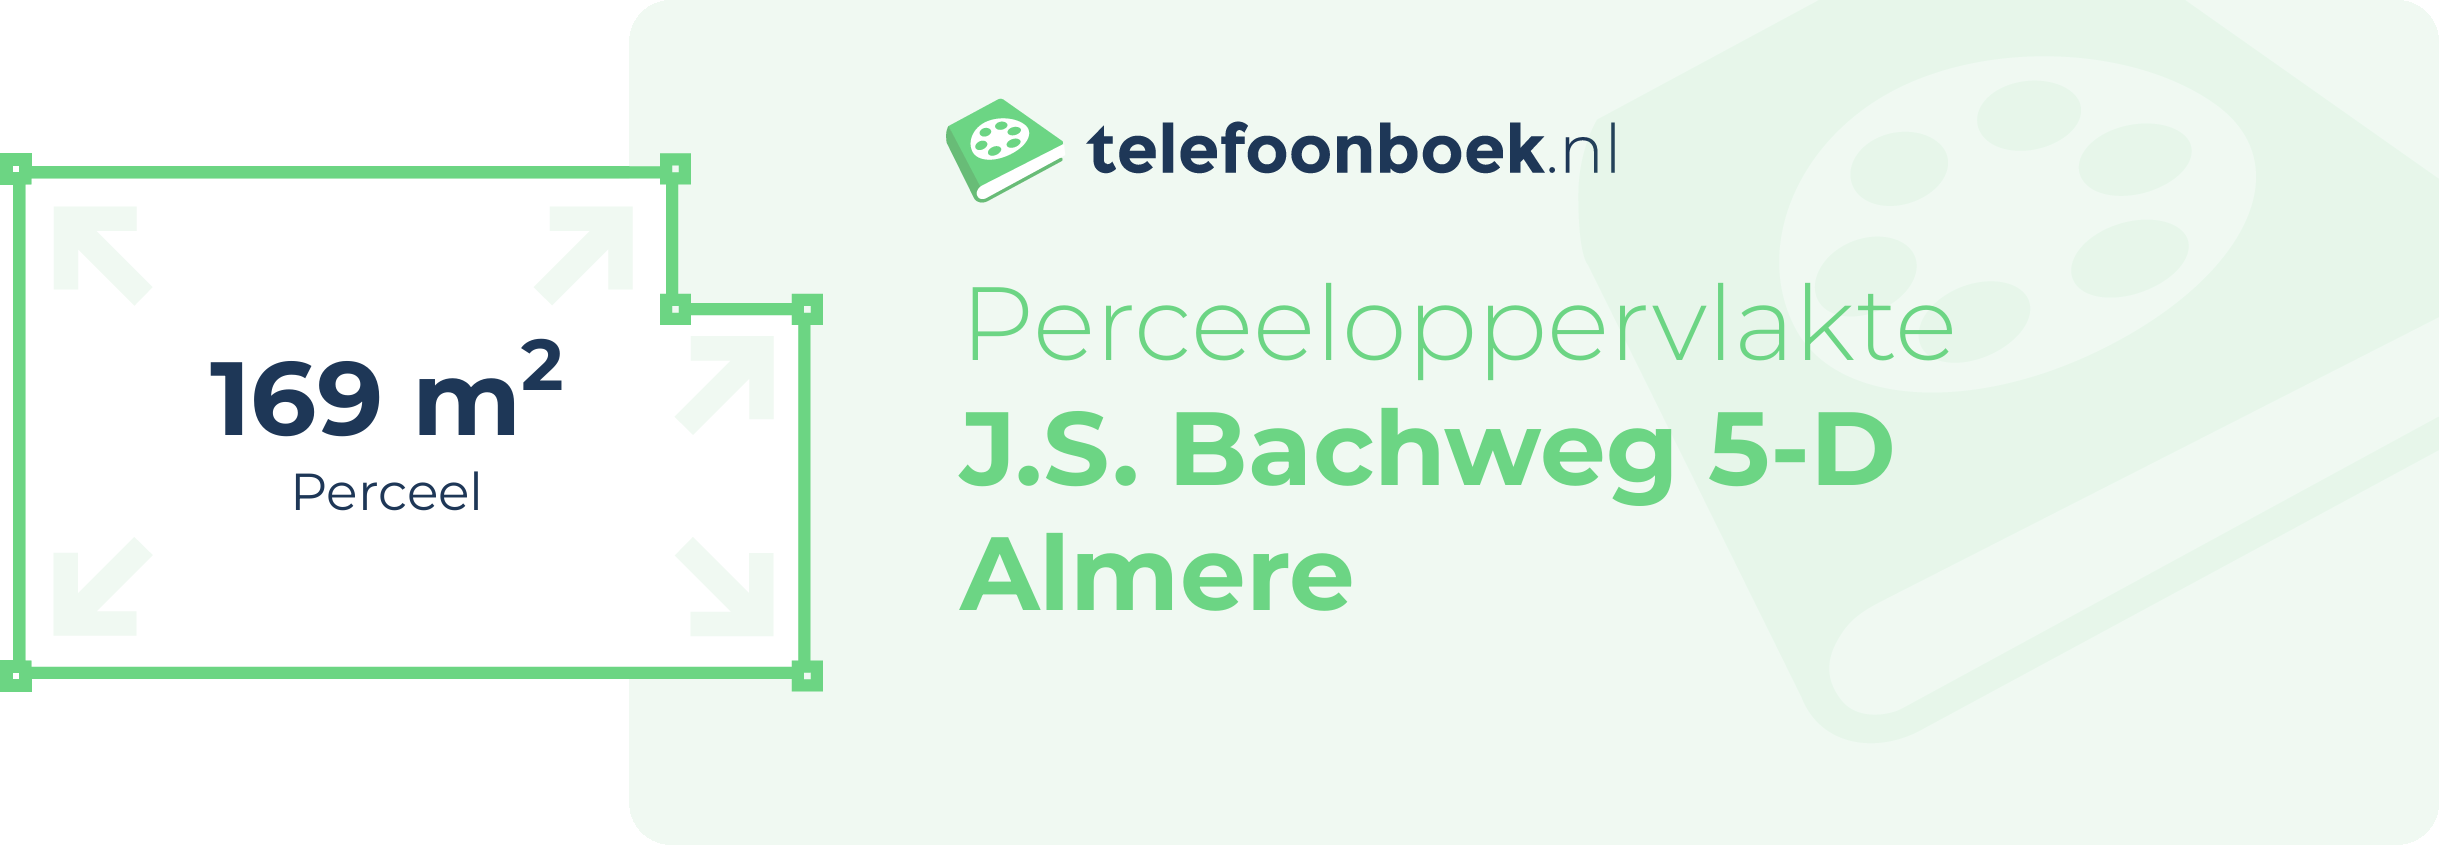 Perceeloppervlakte J.S. Bachweg 5-D Almere